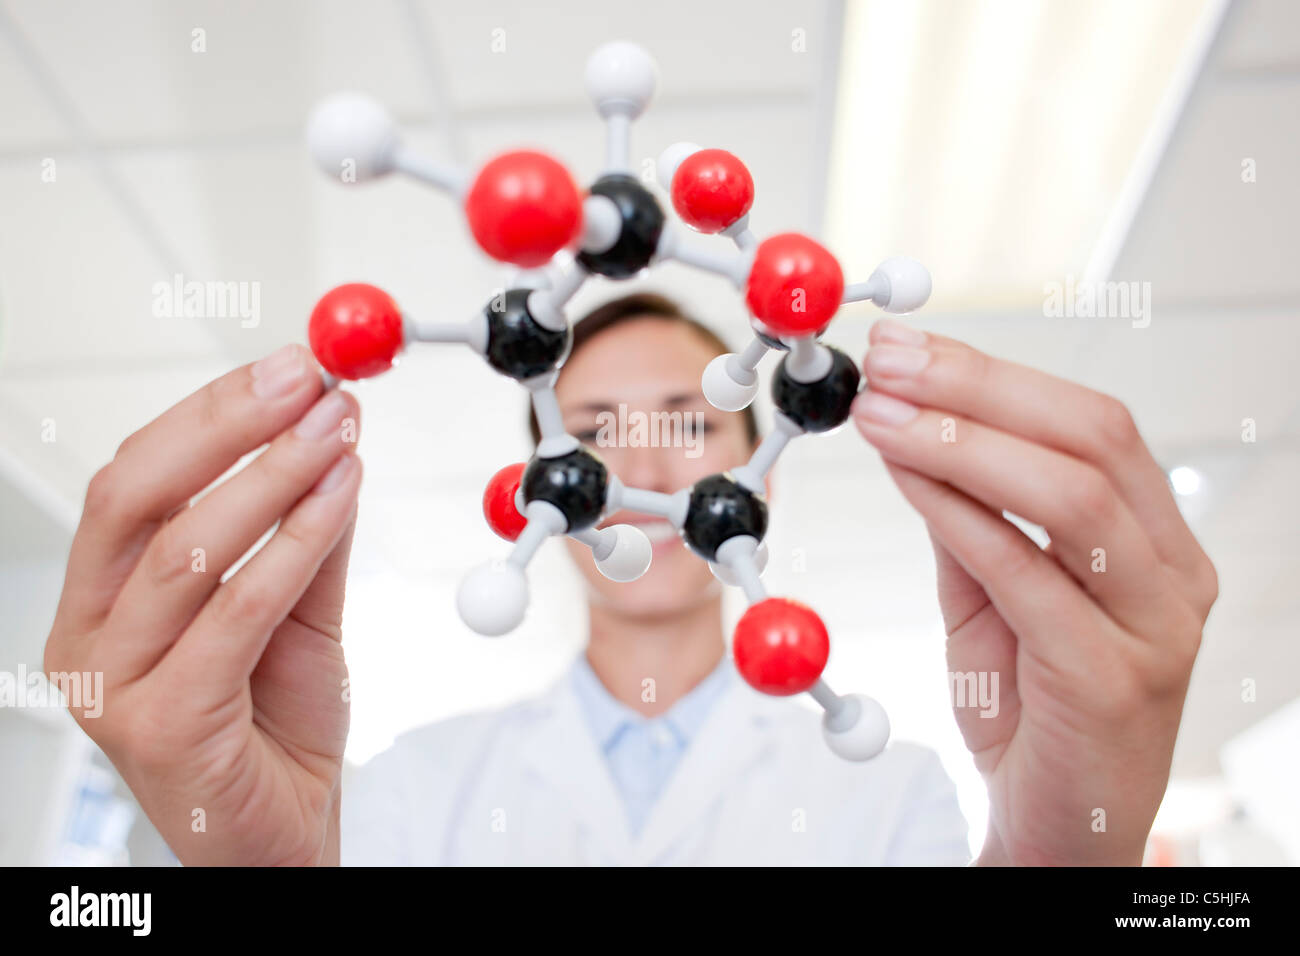 Chemist Stock Photo